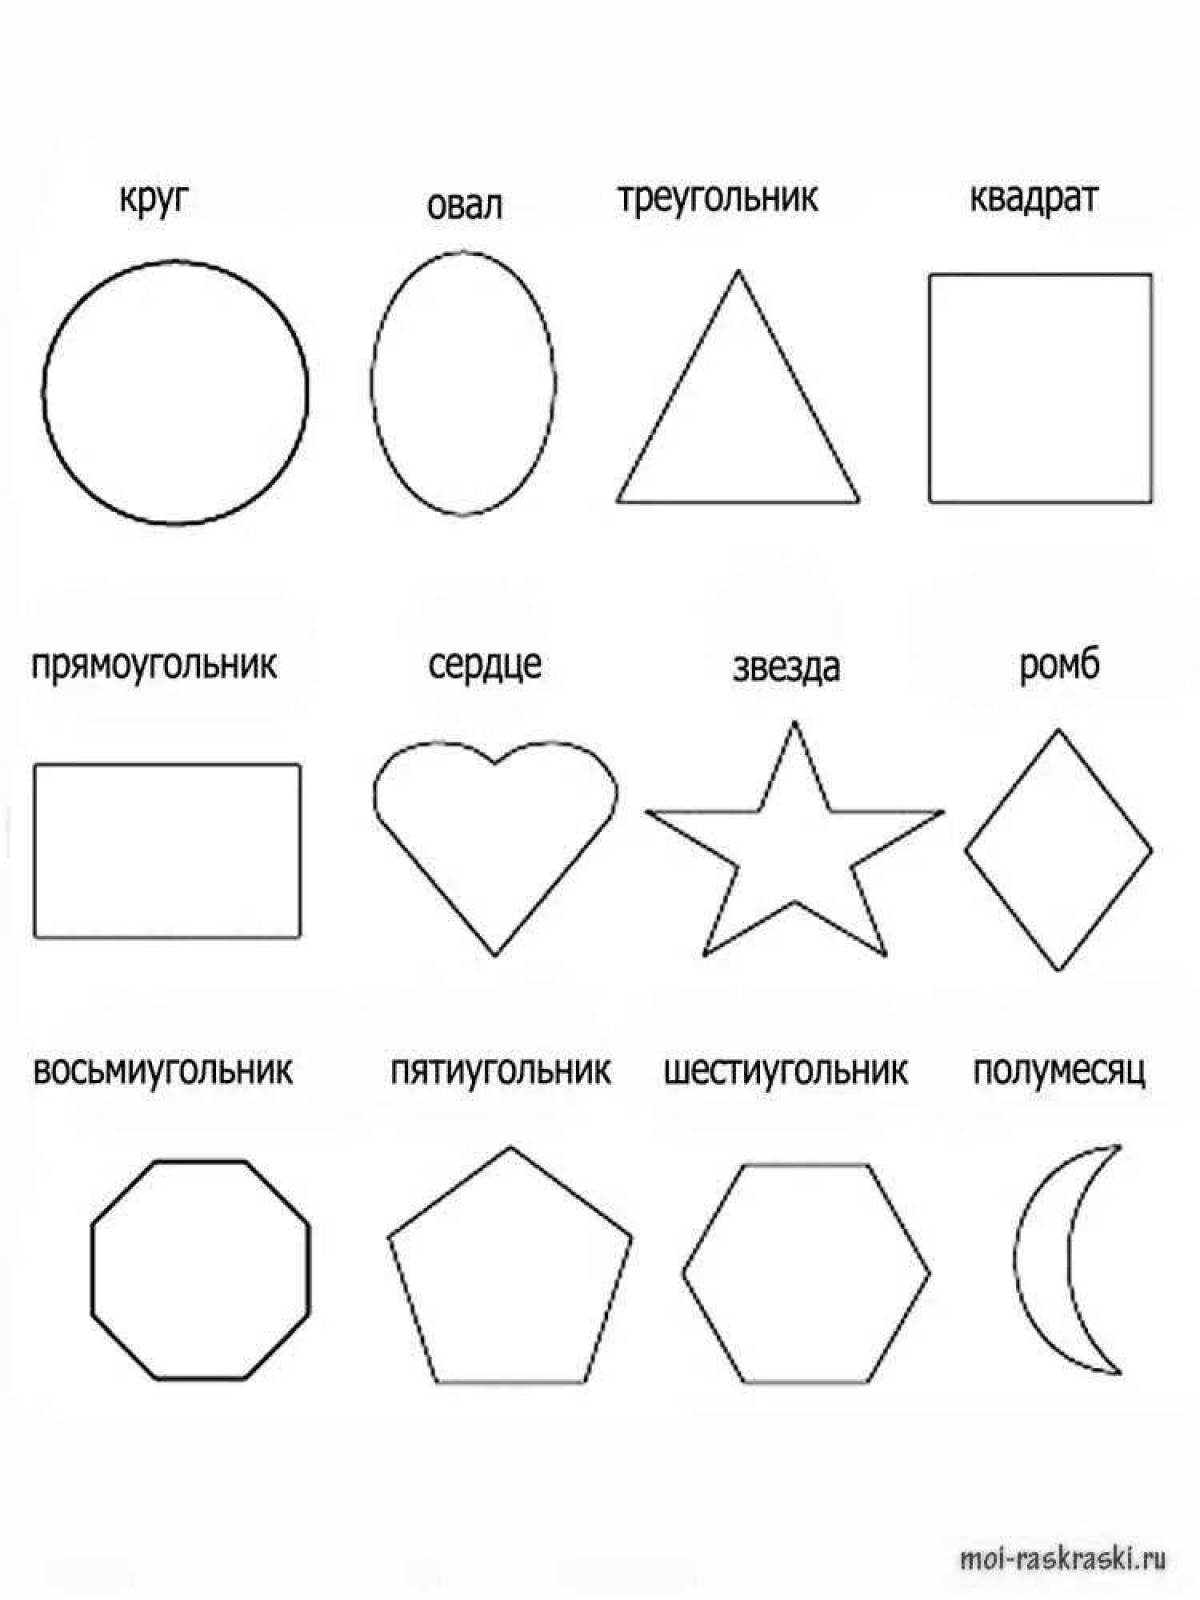 Увлекательная раскраска геометрических фигур для детей 5-6 лет